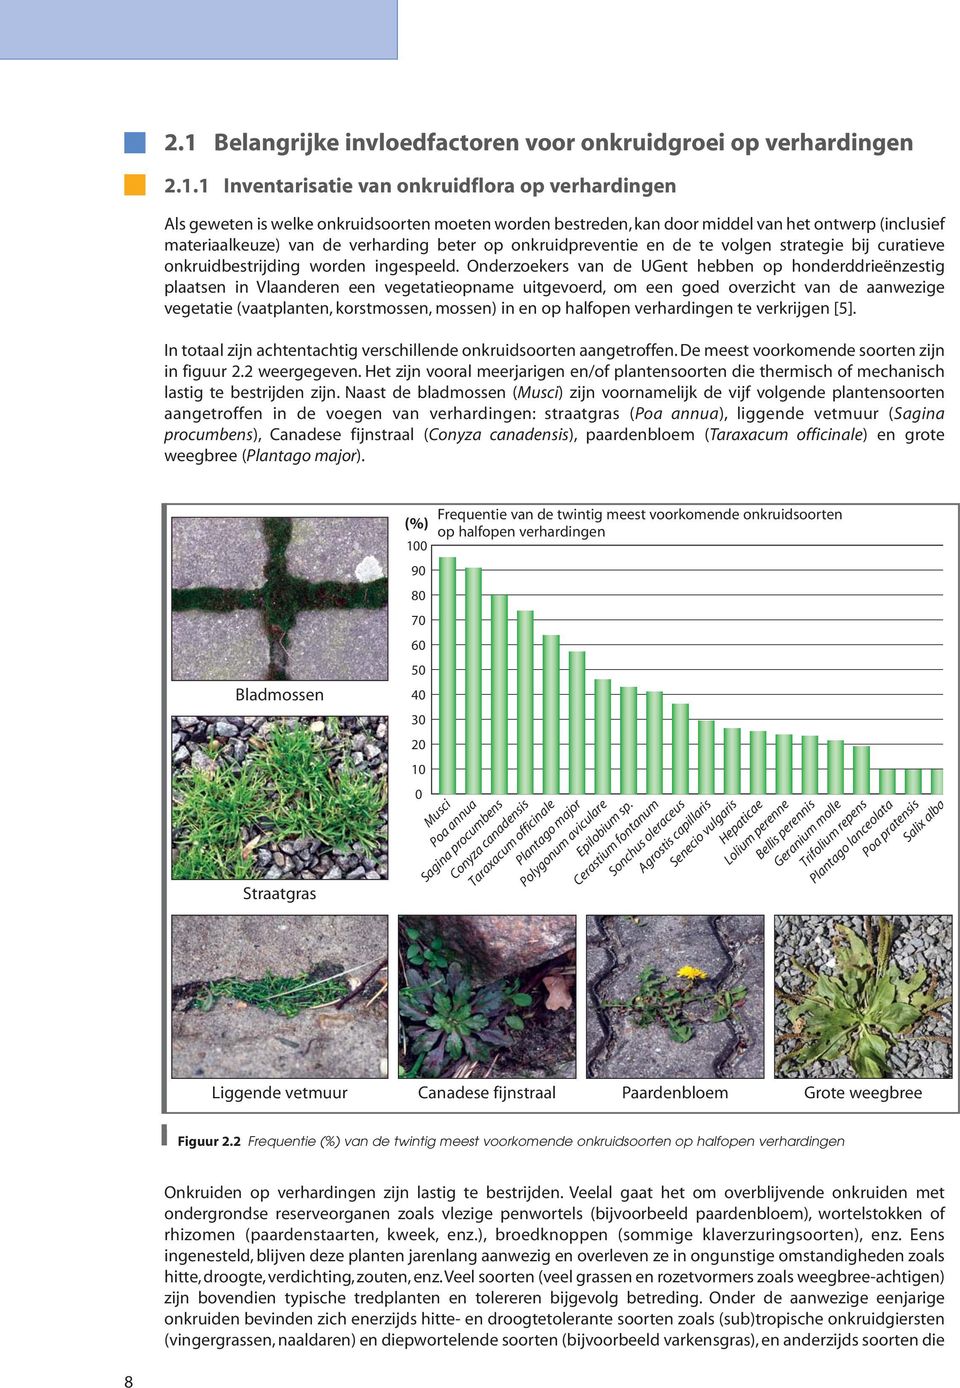 Onderzoekers van de UGent hebben op honderddrieënzestig plaatsen in Vlaanderen een vegetatieopname uitgevoerd, om een goed overzicht van de aanwezige vegetatie (vaatplanten, korstmossen, mossen) in